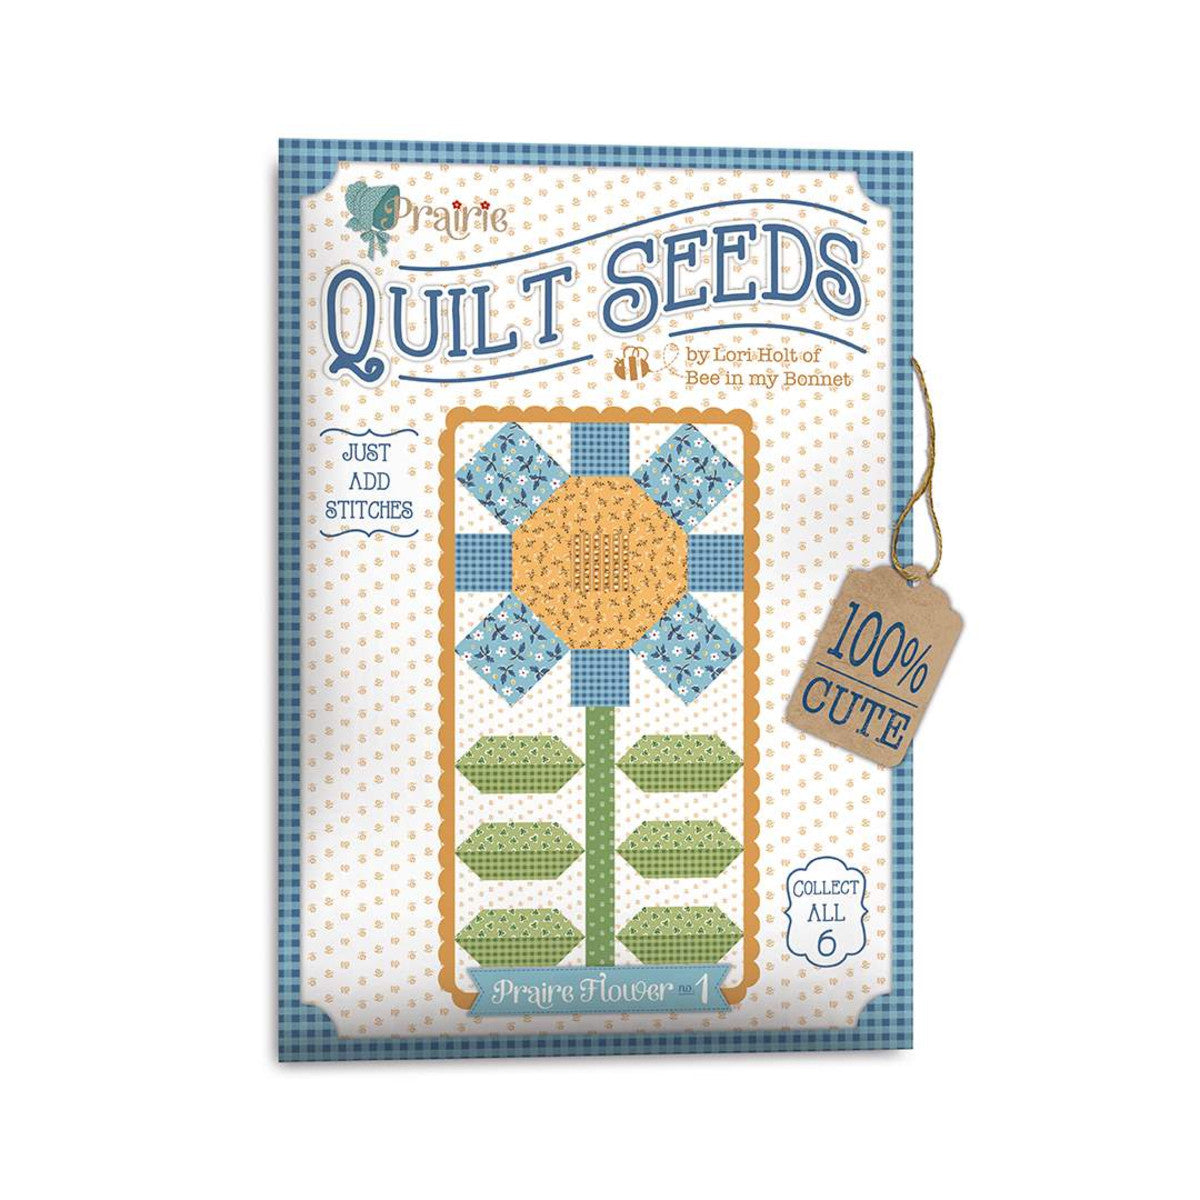 PATTERN, Flower 1 (Prairie Quilt Seeds) Pattern by Lori Holt